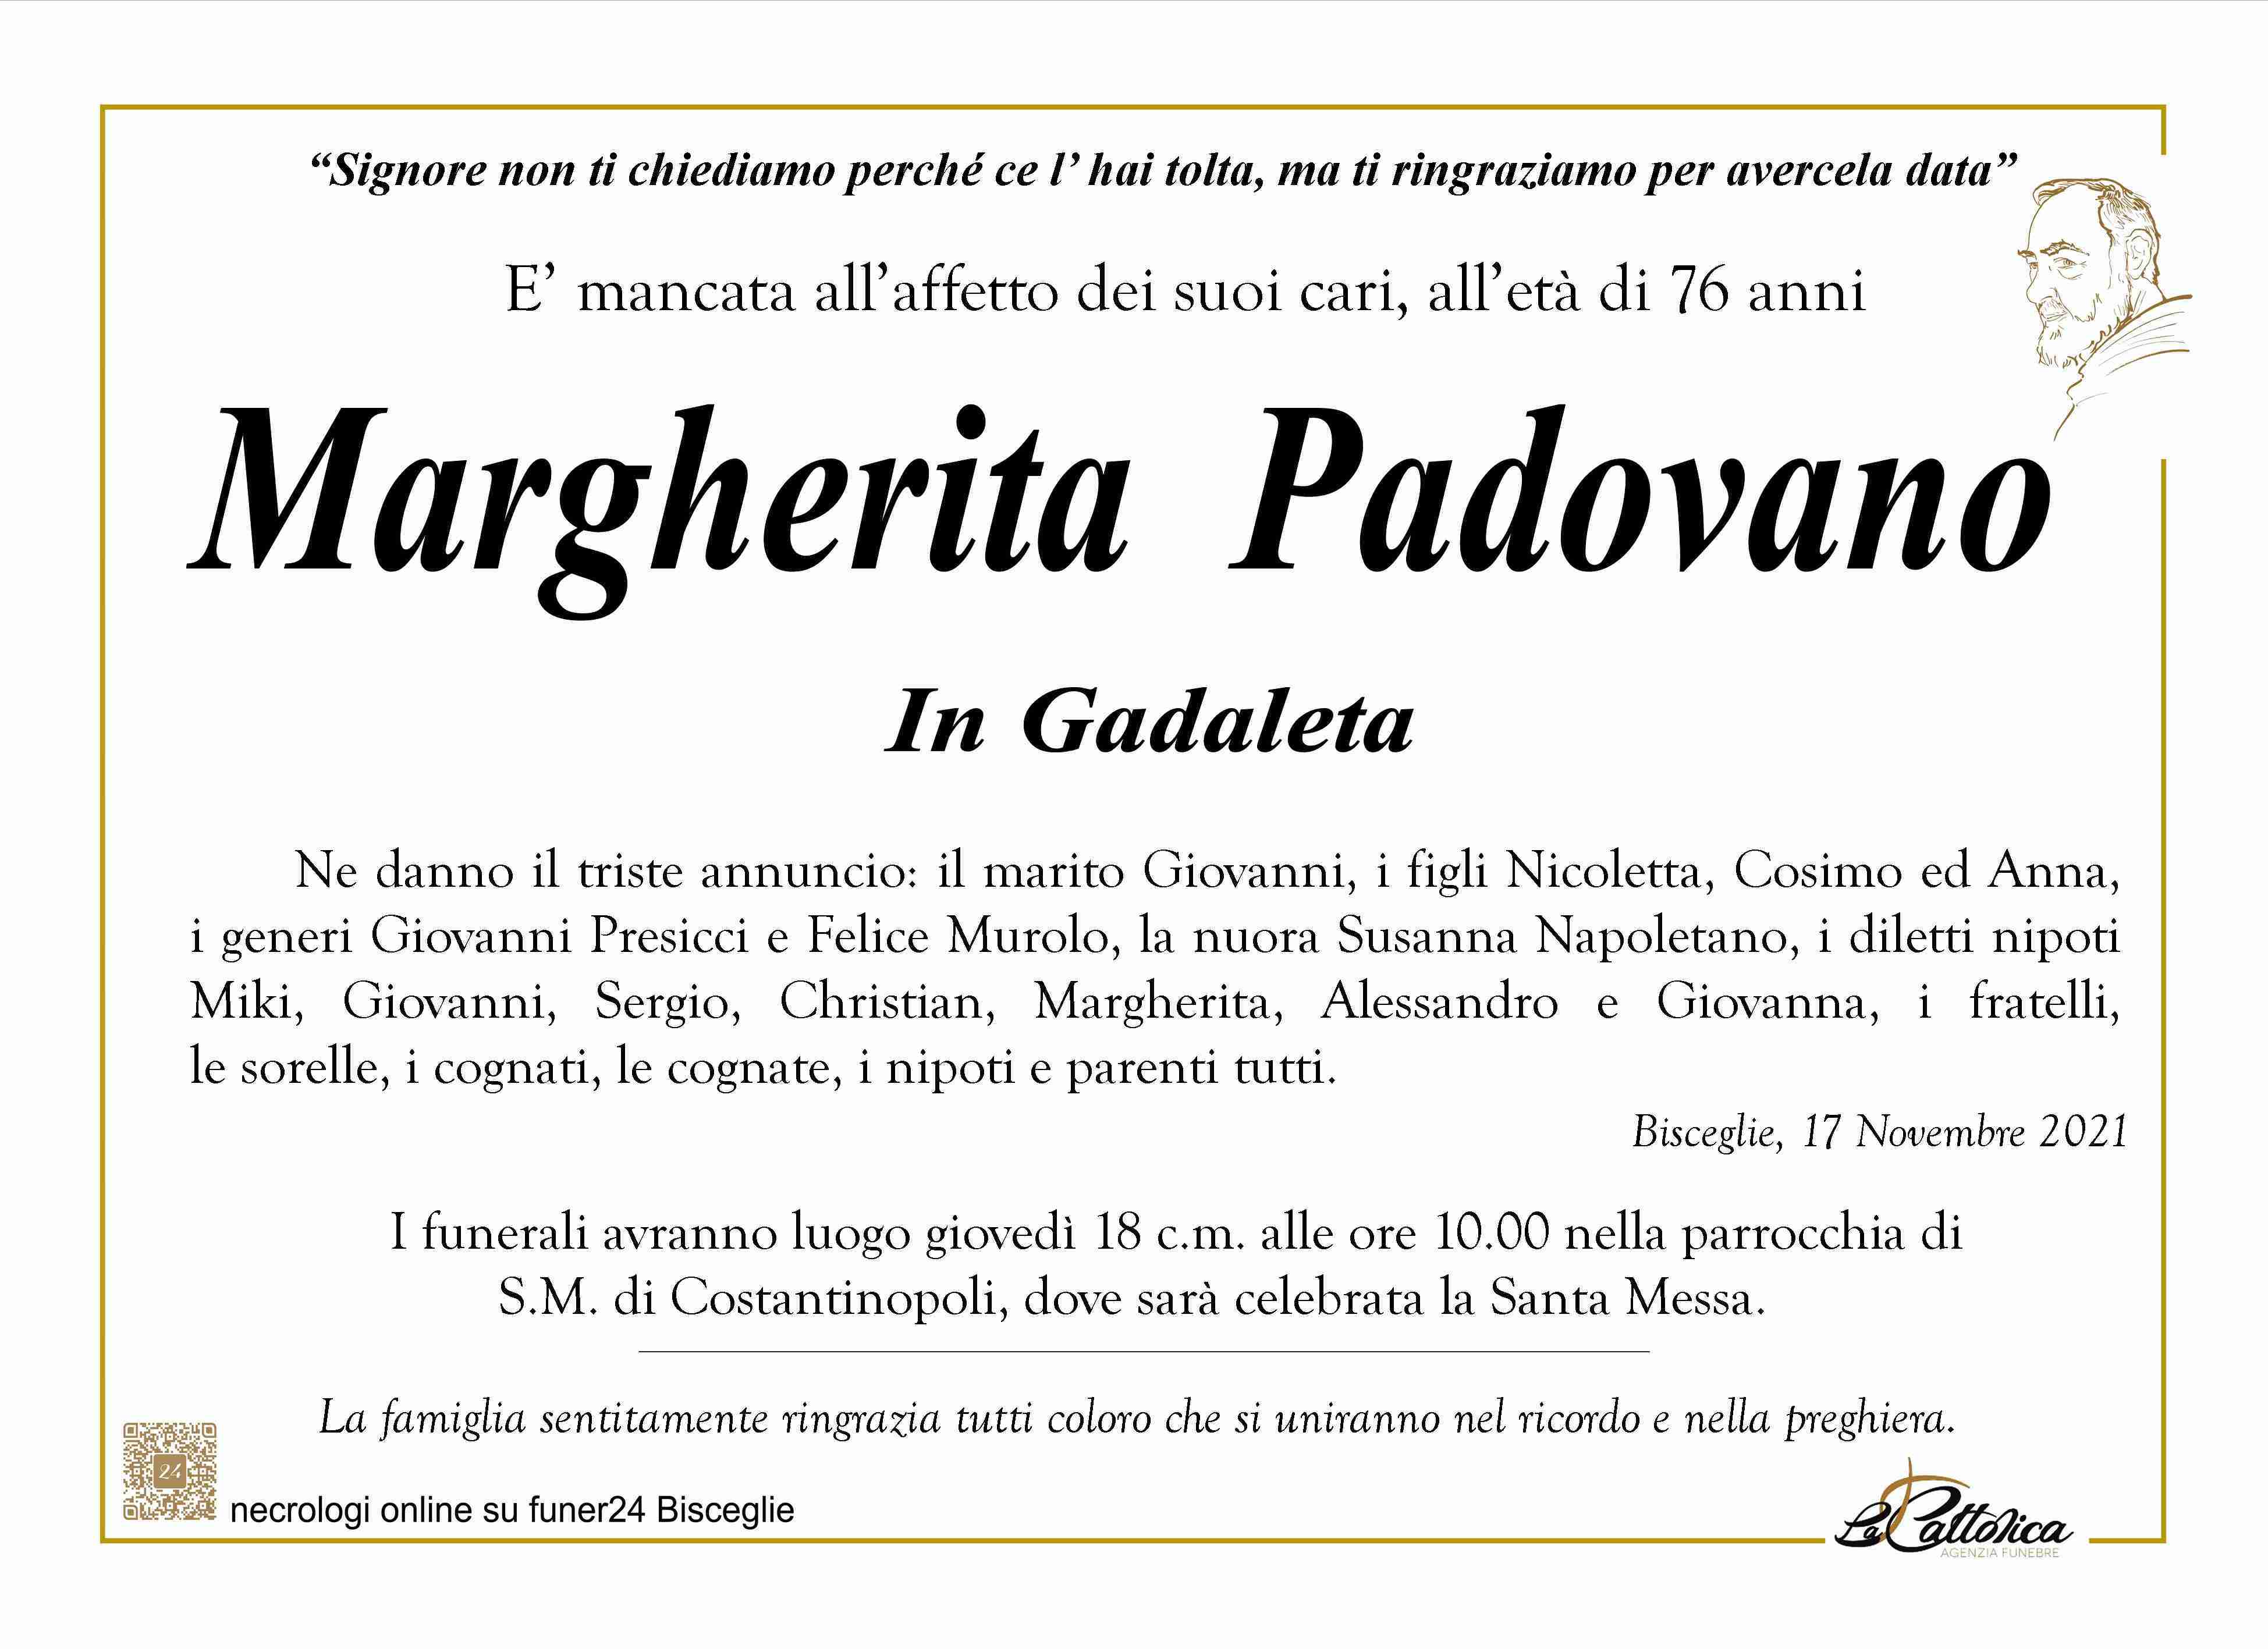 Margherita Padovano